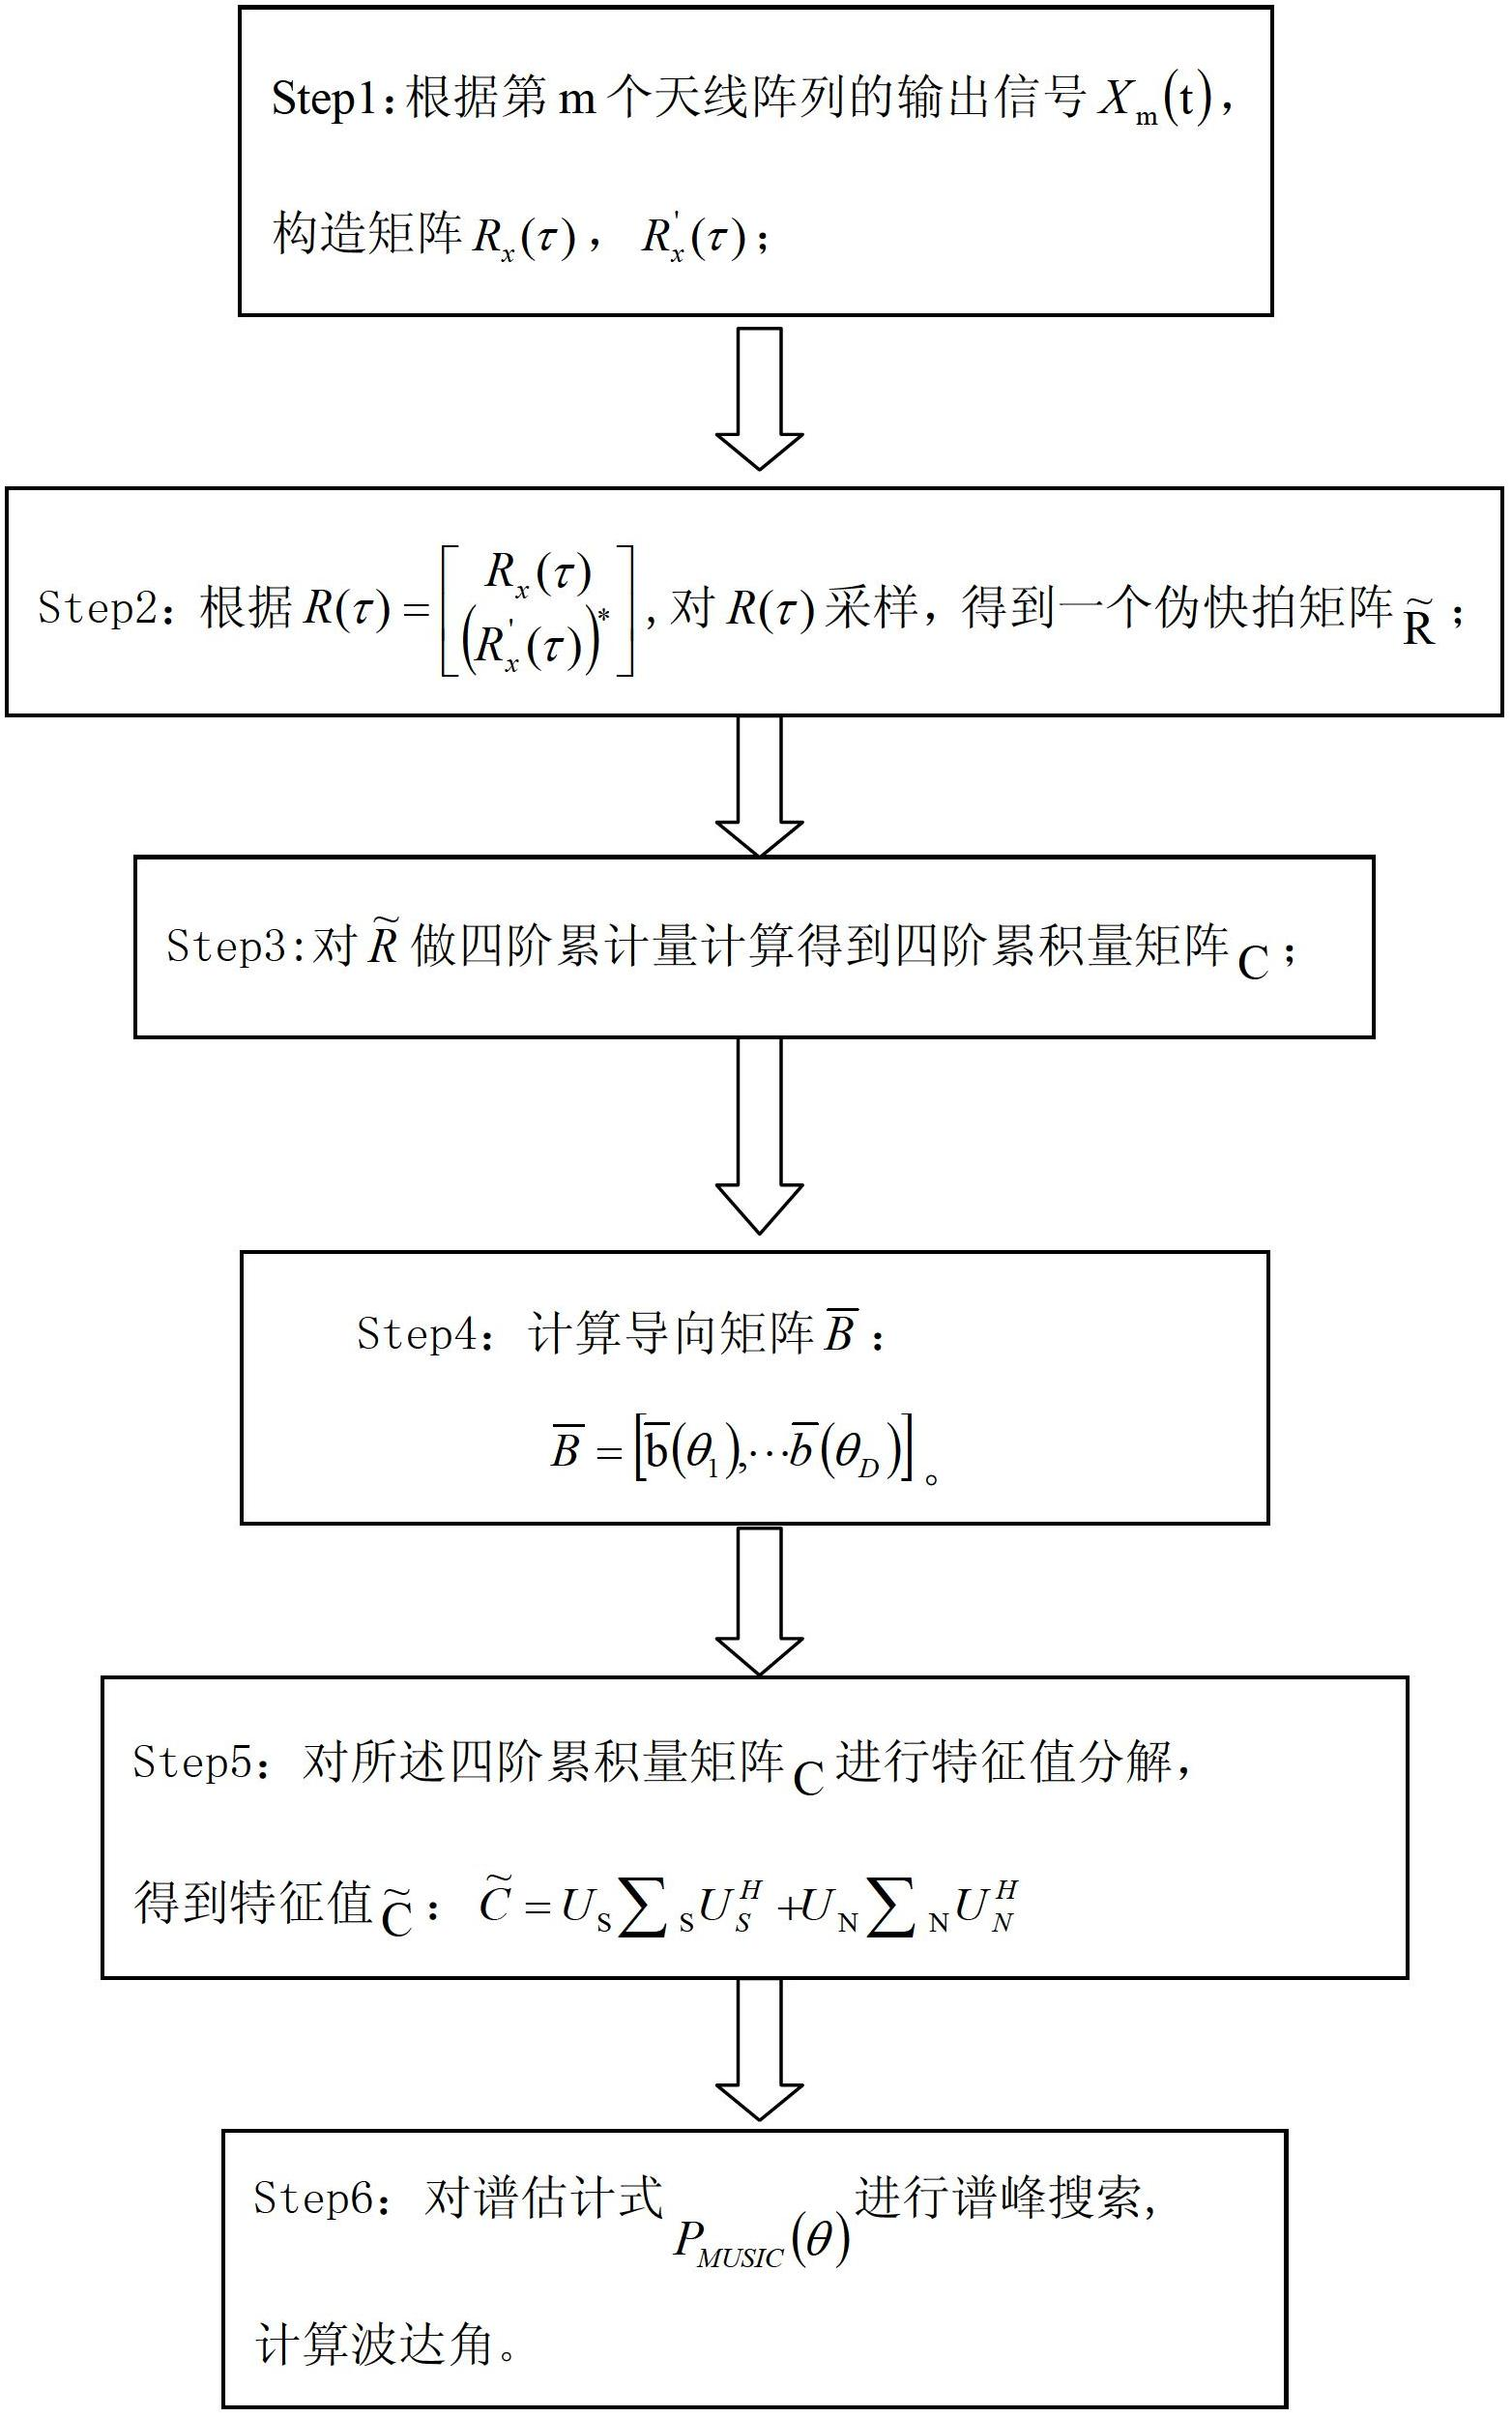 Arrival direction estimation method based on conjugation expansion